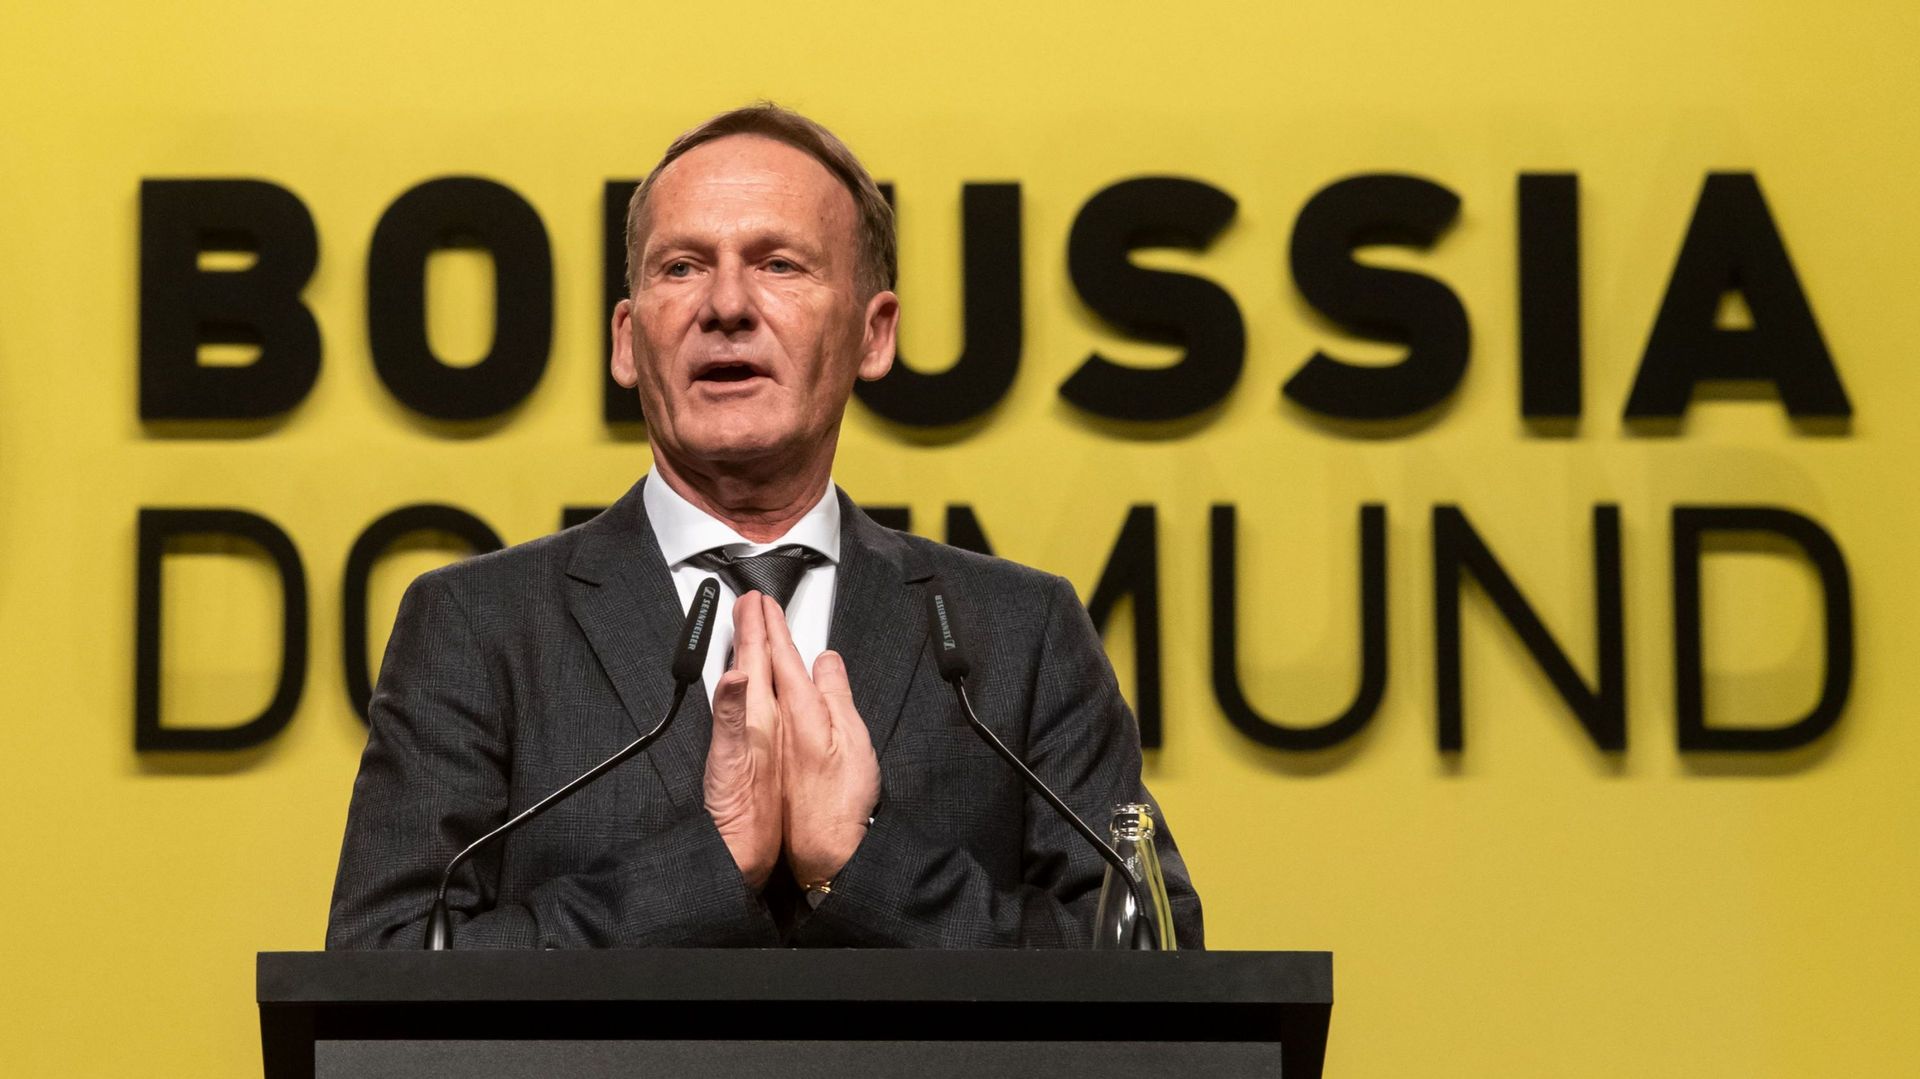 Alors que Dortmund a subit des pertes à cause du coronavirus, Le directeur Hans-Joachim Watzke affirme que le club avait les moyens financiers de surmonter la crise.